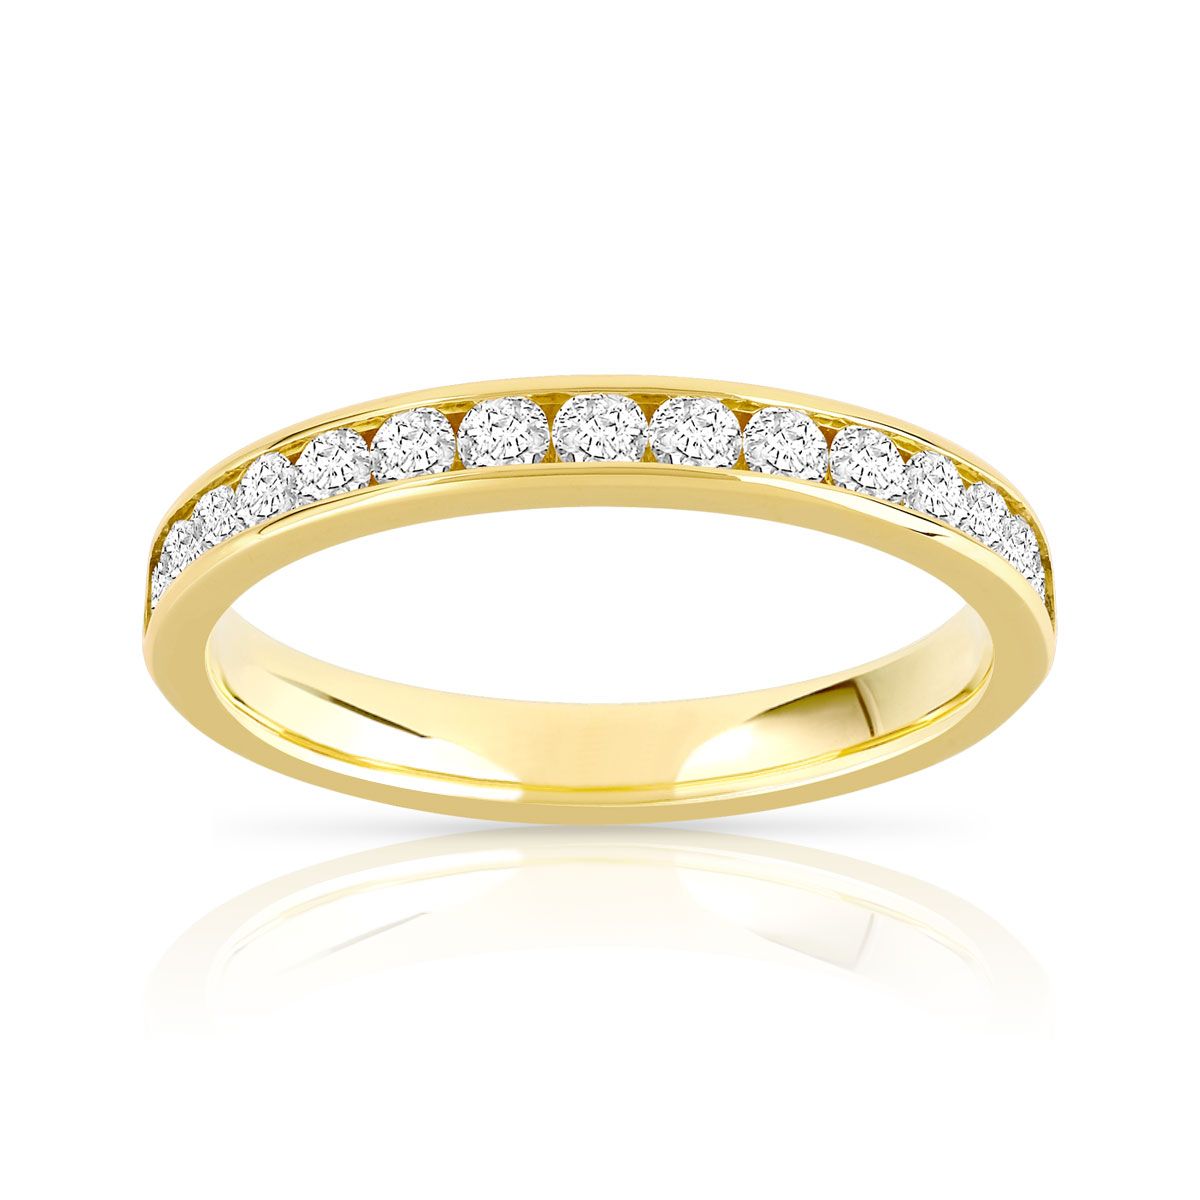 Alliance demi-T or 750 jaune diamants synthétiques 0.50 carat